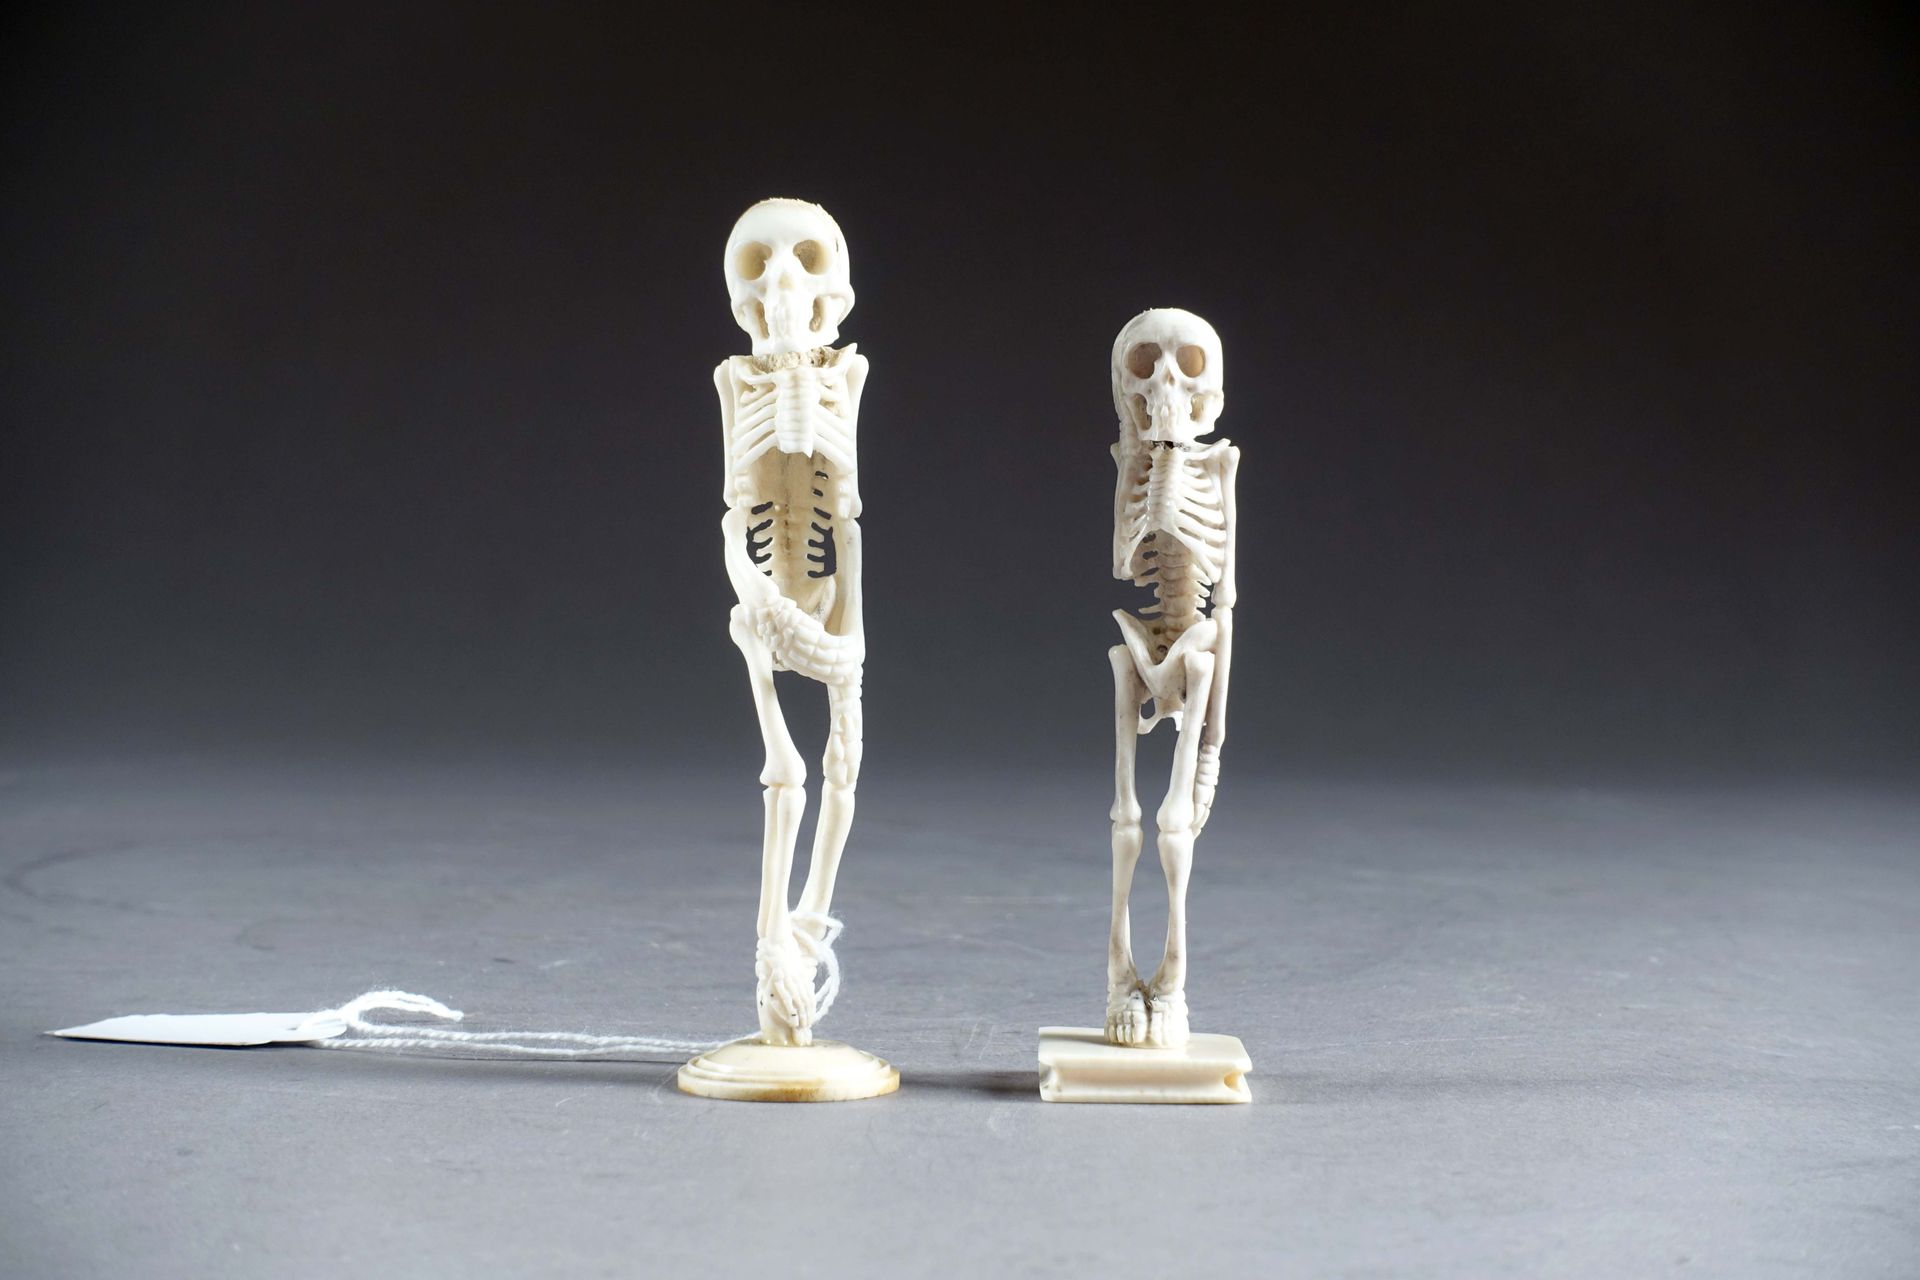 Deux vanités. 每幅作品都描绘了一具站立的人体骨骼。雕刻的骨头。20世纪。高度：9和10厘米。状况。没有意外。